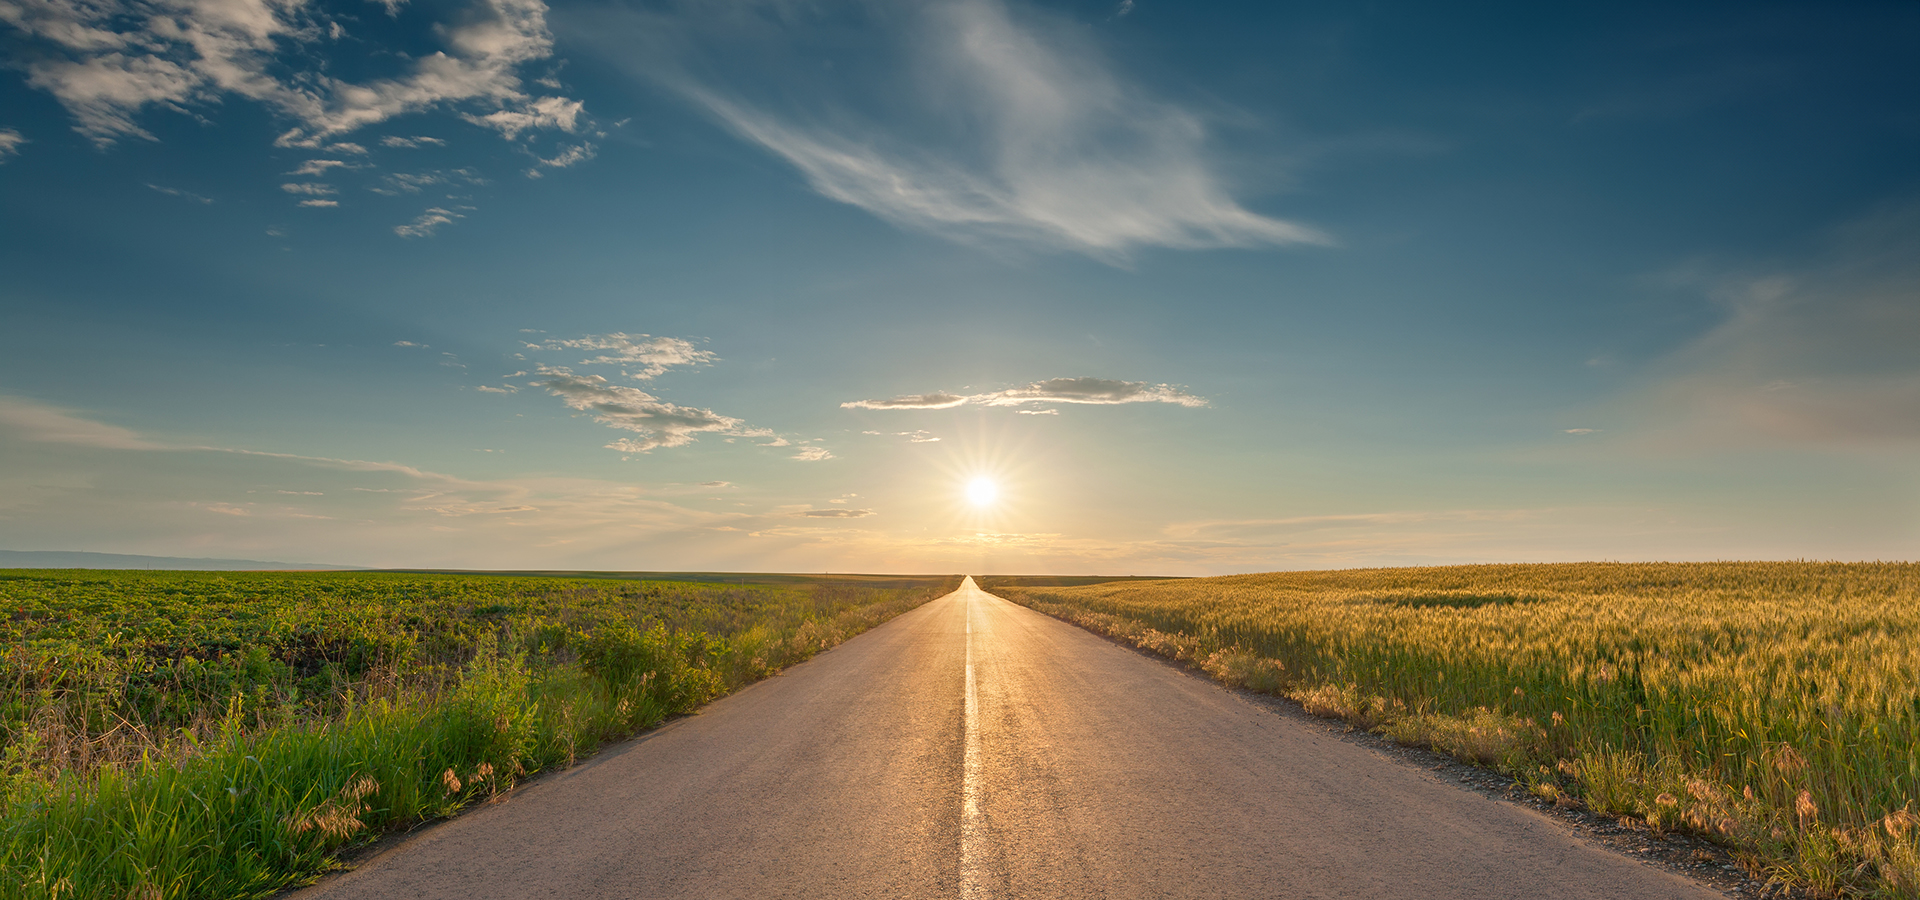 Conduire sur une route asphaltée vide à travers les champs de blé et de soja vers le soleil couchant.